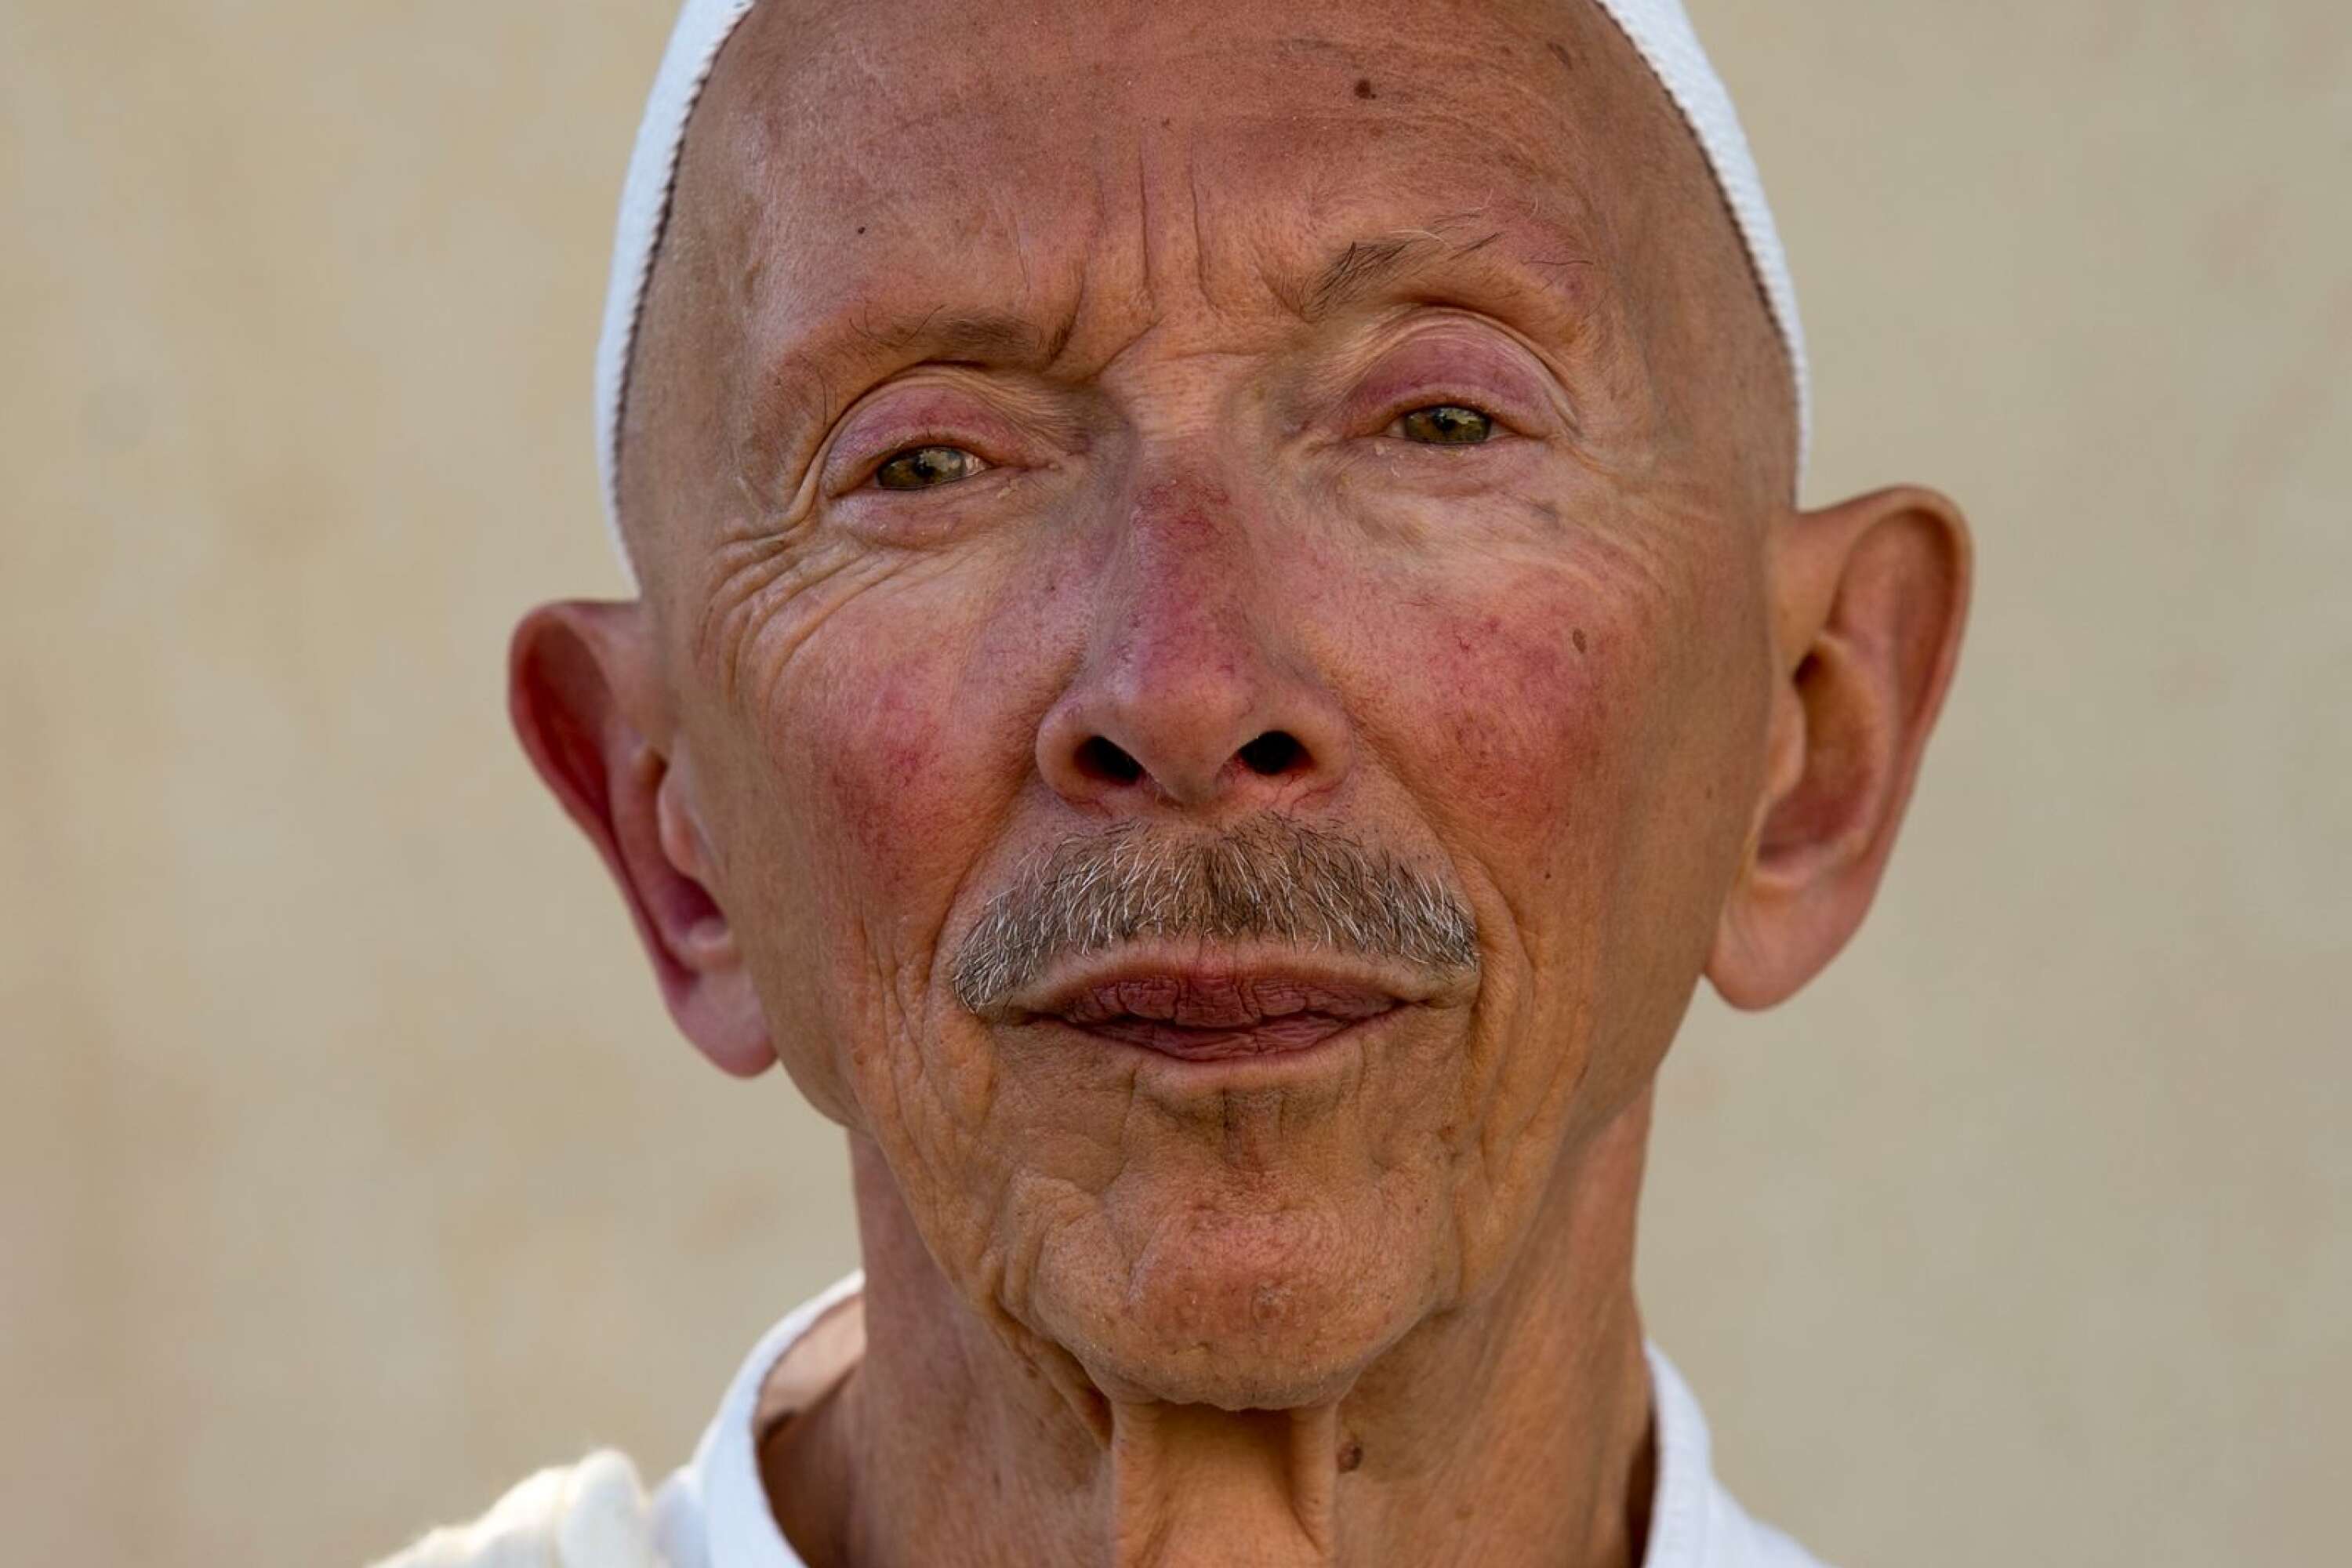 Så här ser Leif ut idag. Han bor i Marocko, en kilometer från Medelhavet, är pensionär - och muslim.